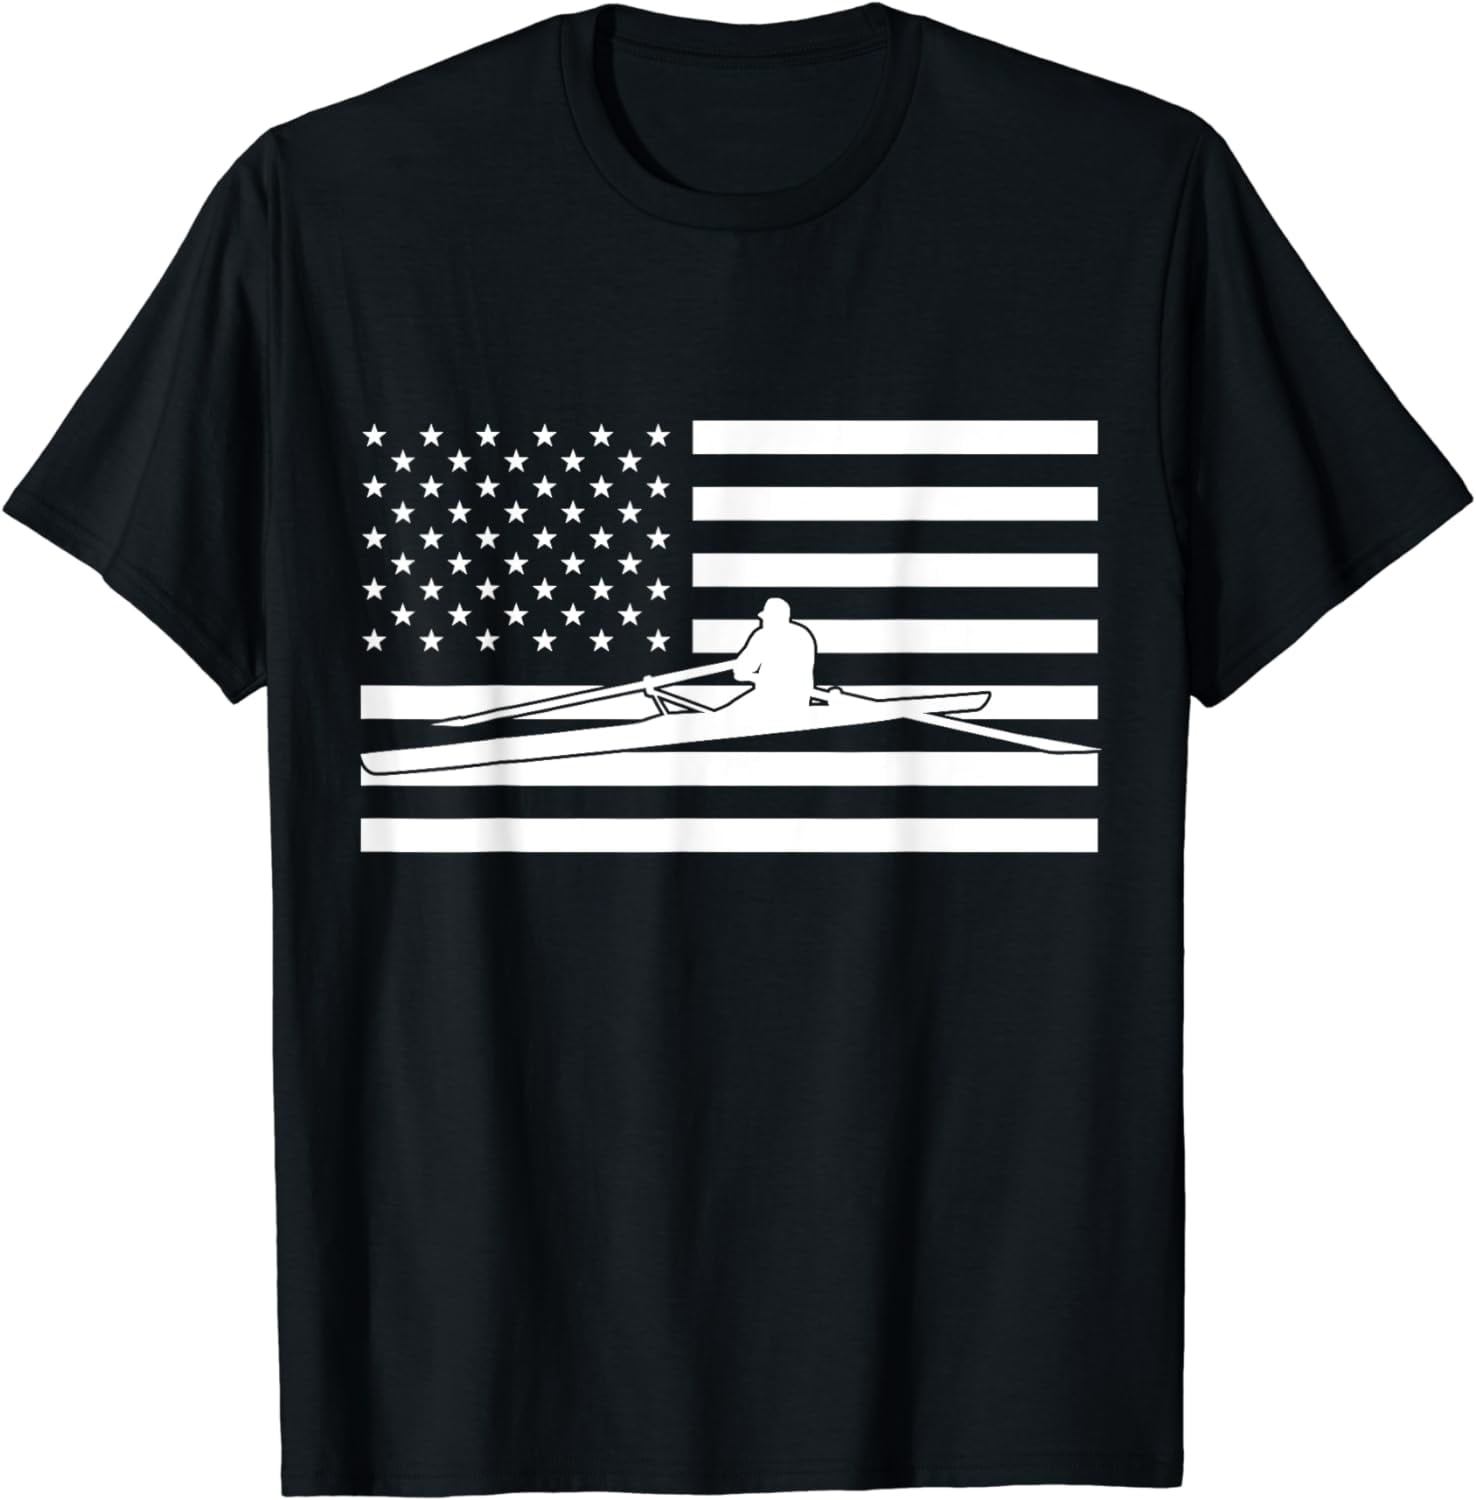 USA Flag Rowing Apparel - American Flag Rowing T-Shirt - Walmart.com